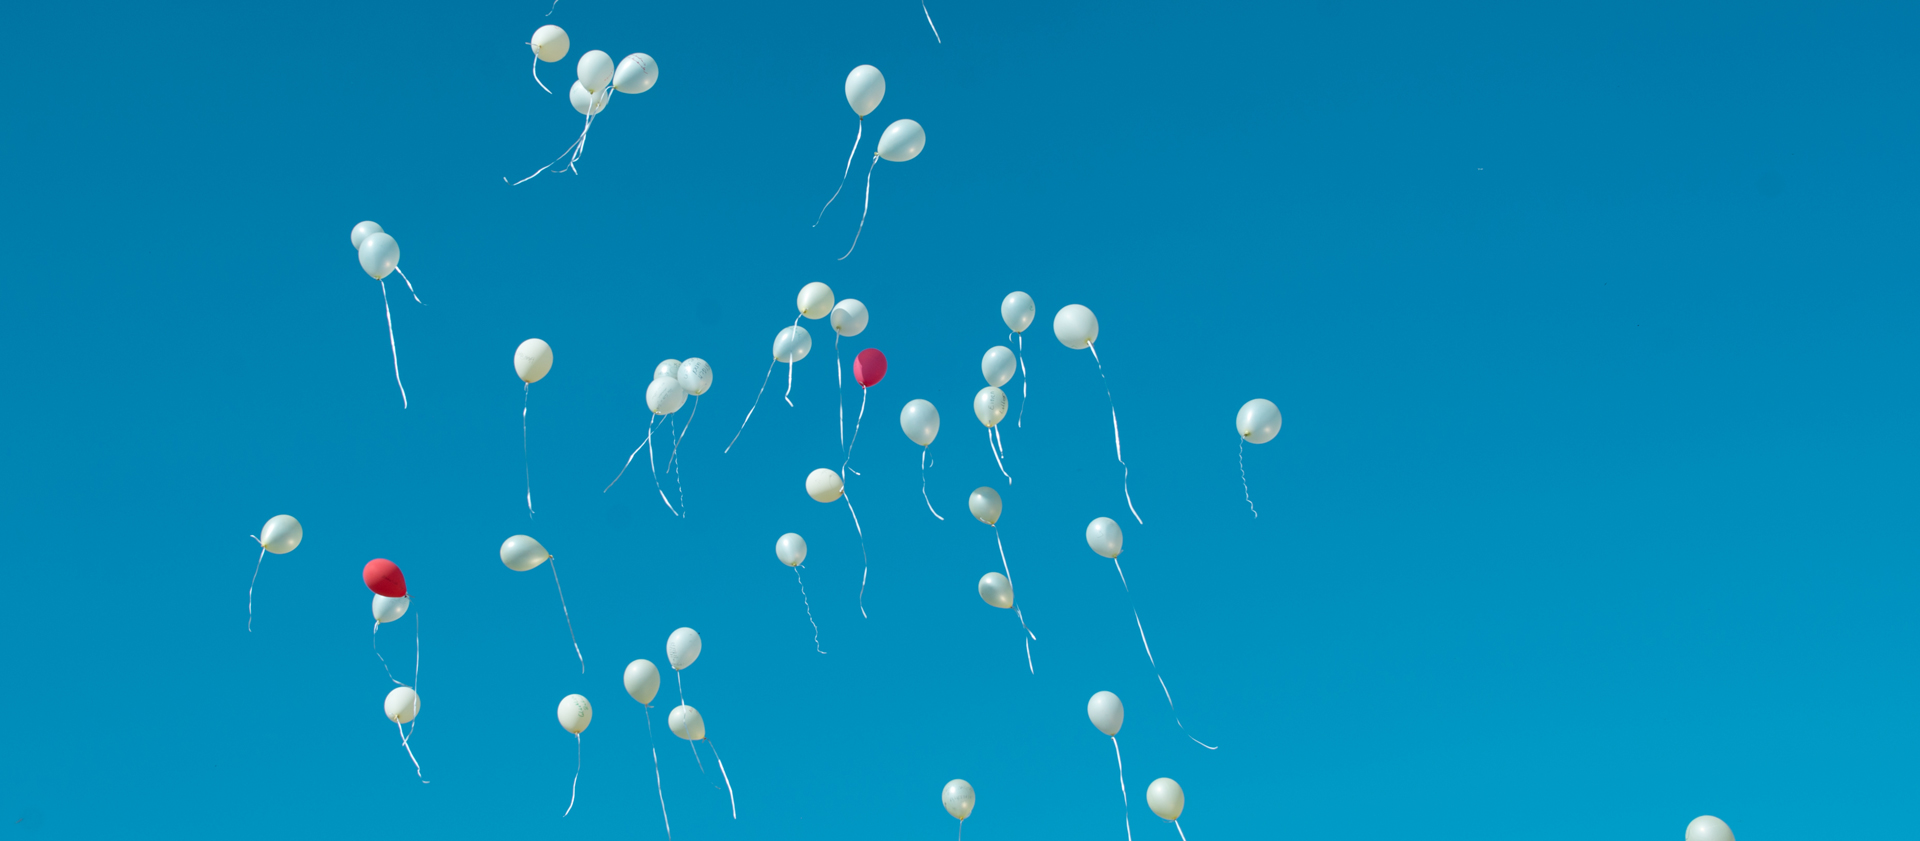 Luftballons bei einer Hochzeit steigen in den Himmel, viele davon sind weiß, zwei davon sind rot